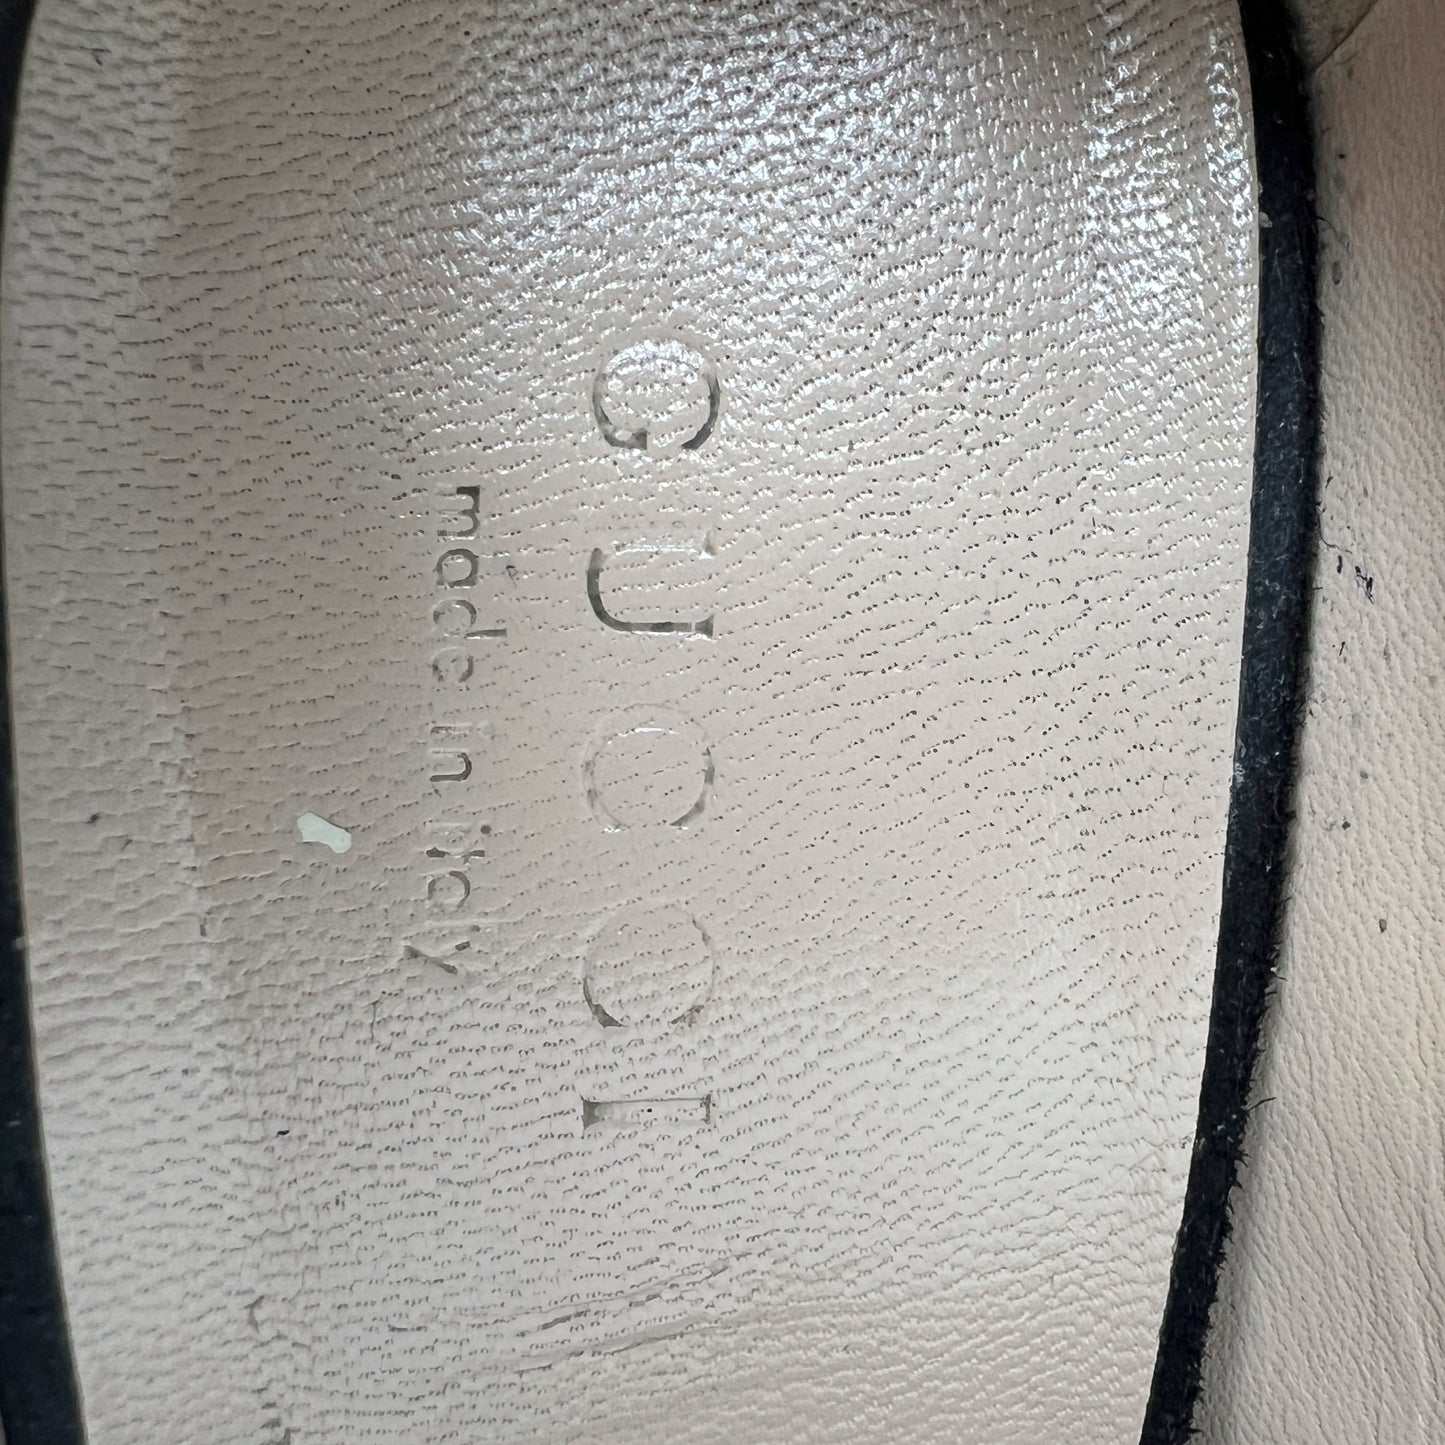 Gucci Black Suede GG Marmont Gold Logo Fringe Kitlie Loafers High Heels Pumps Size EU 36.5